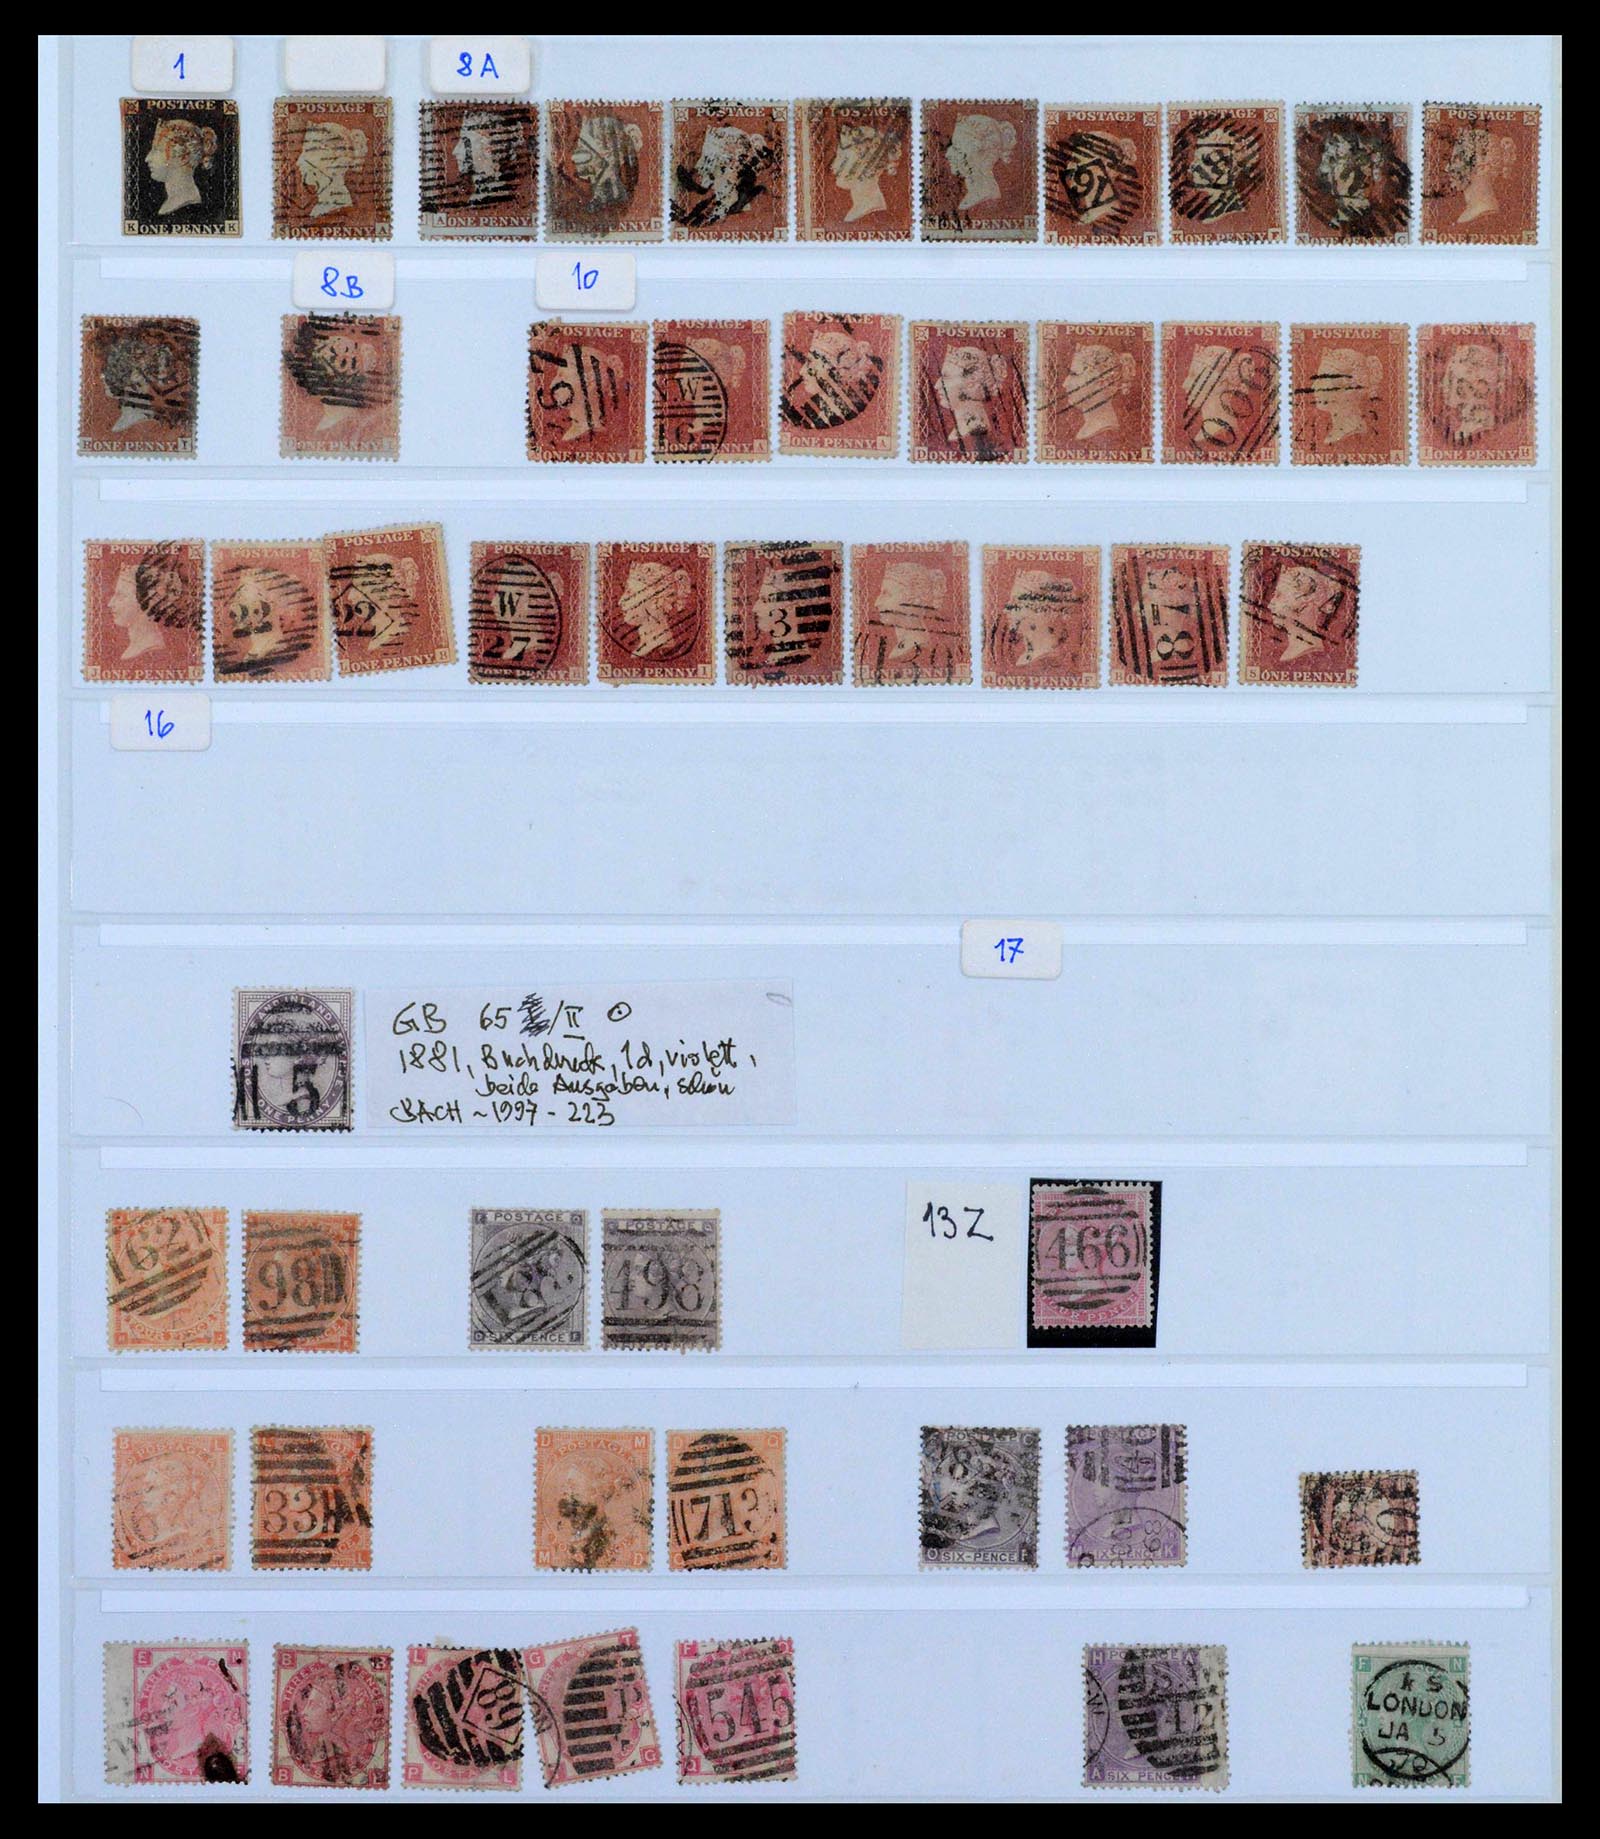 39375 0050 - Postzegelverzameling 39375 Engeland topverzameling 1840-1980.